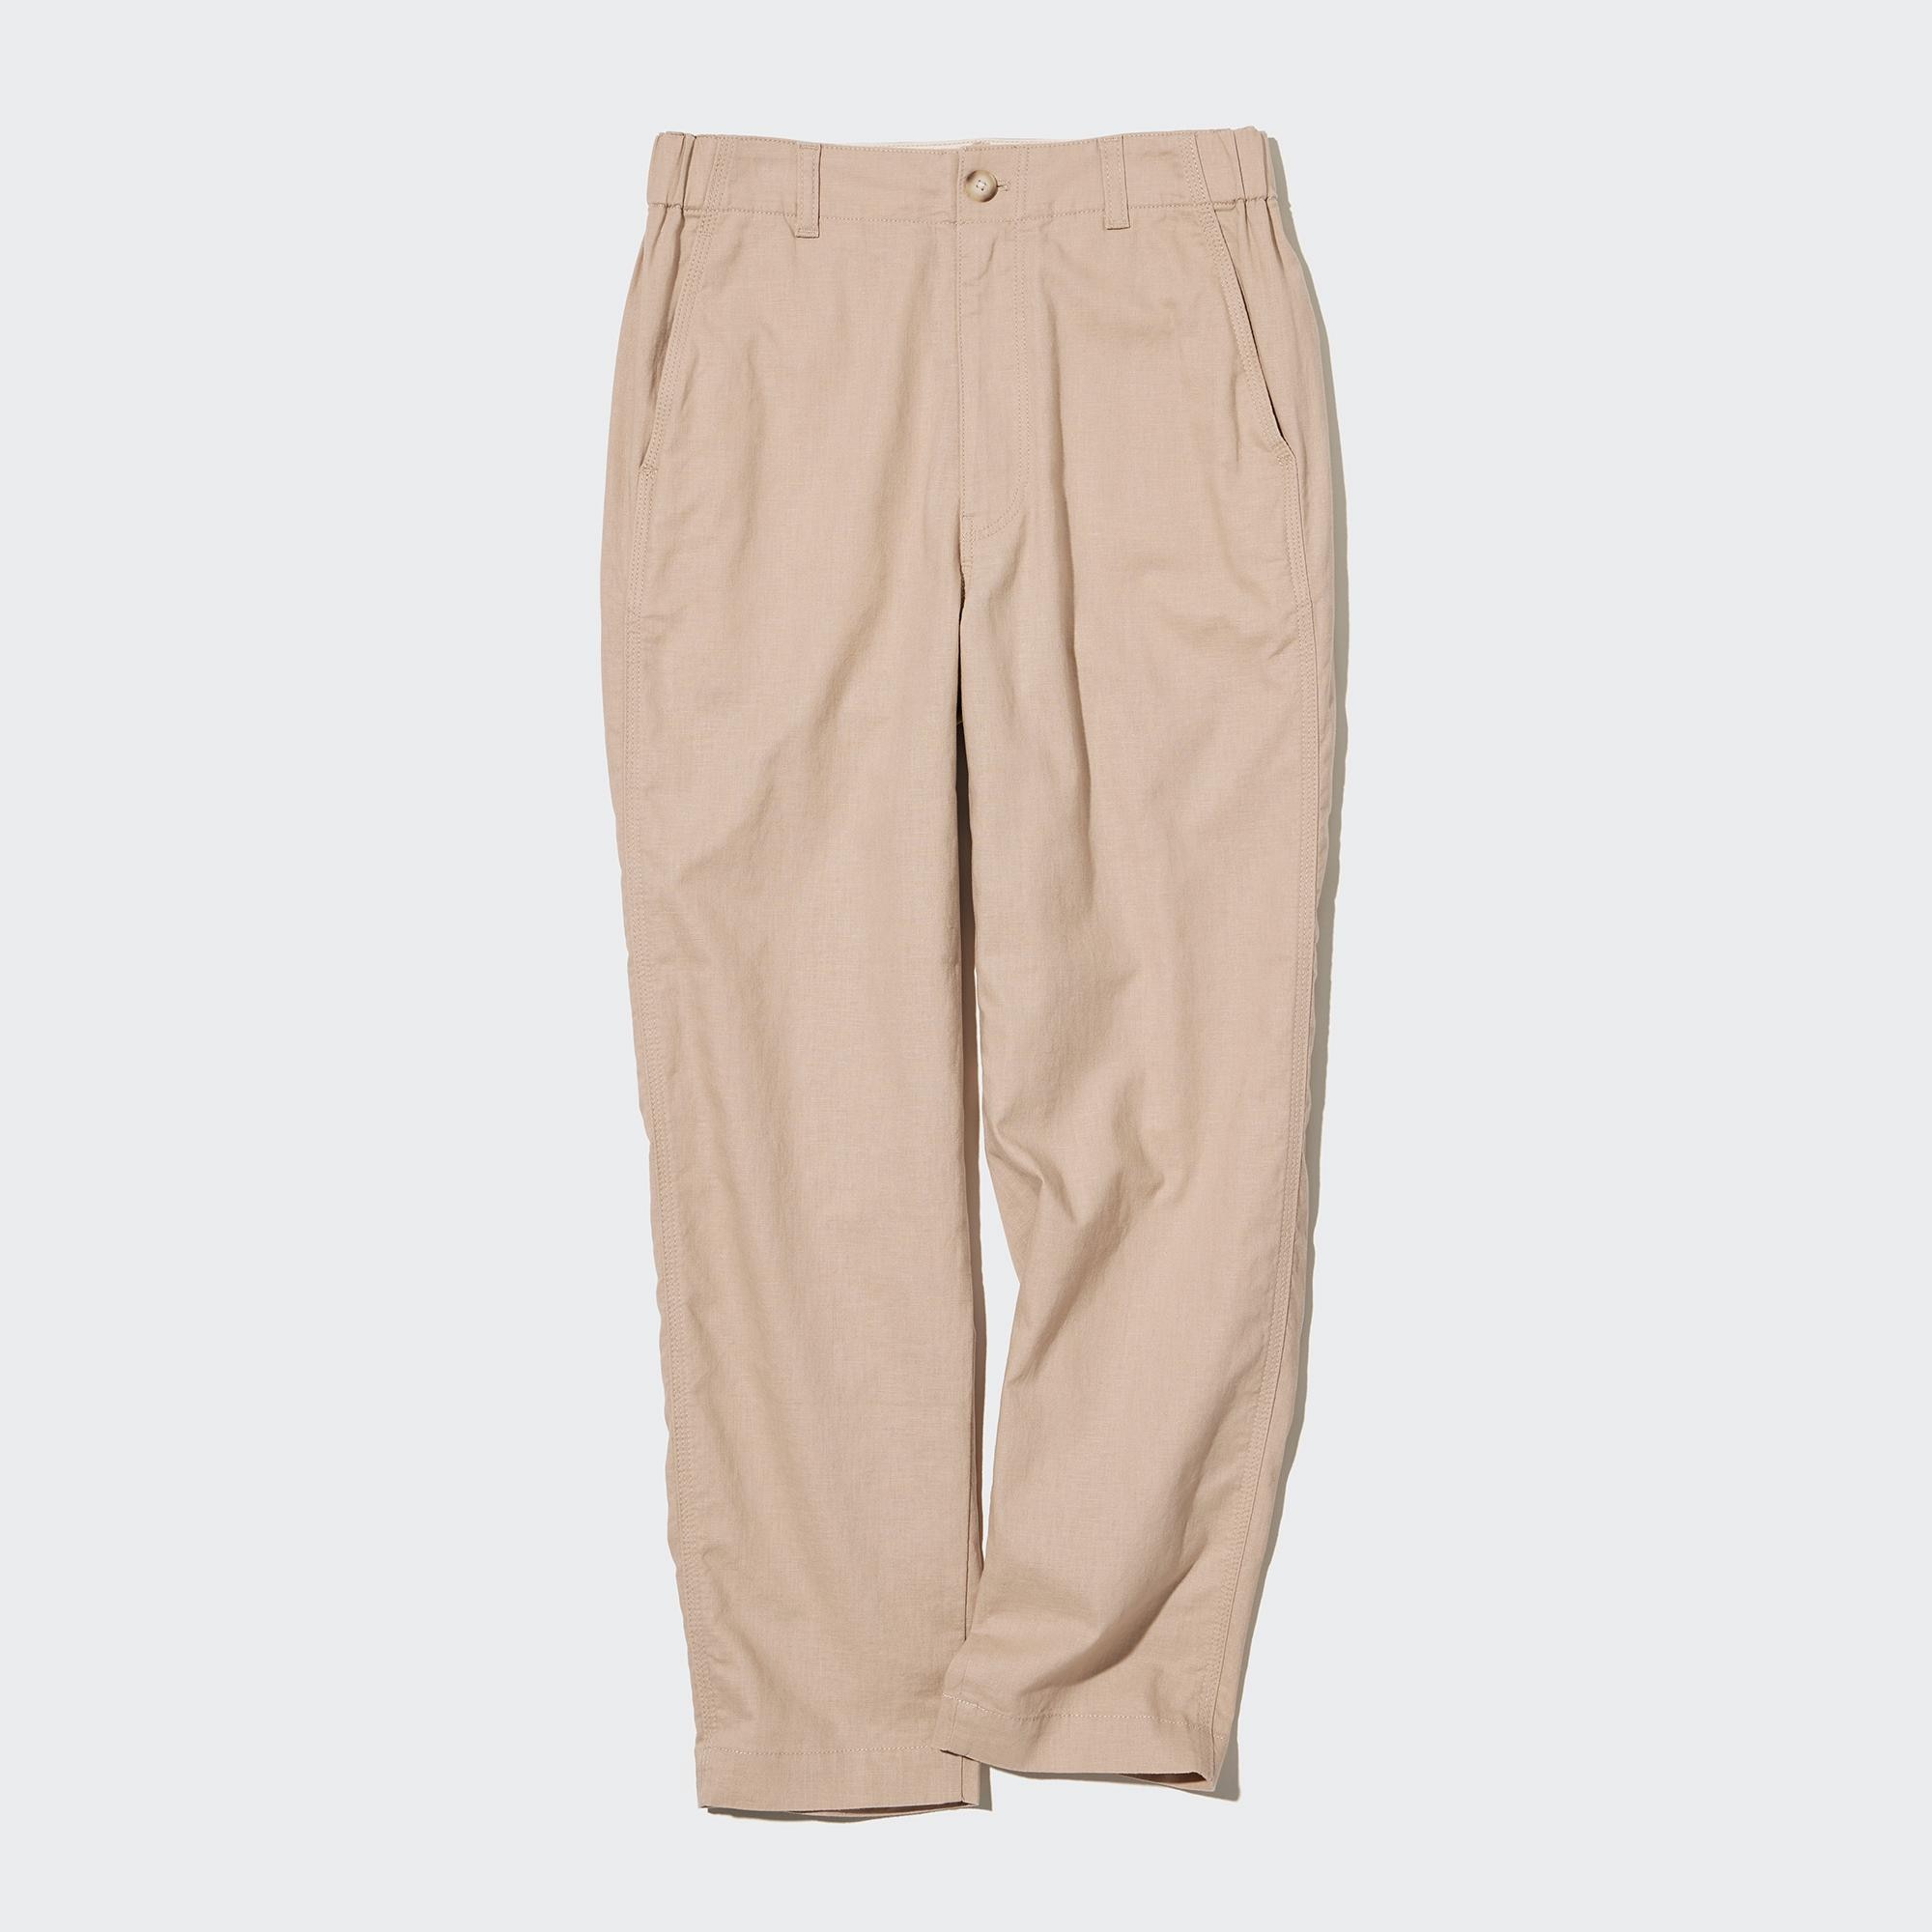 Linen Pants / Linen Trousers / Linen Pants for Women / Loose - Etsy